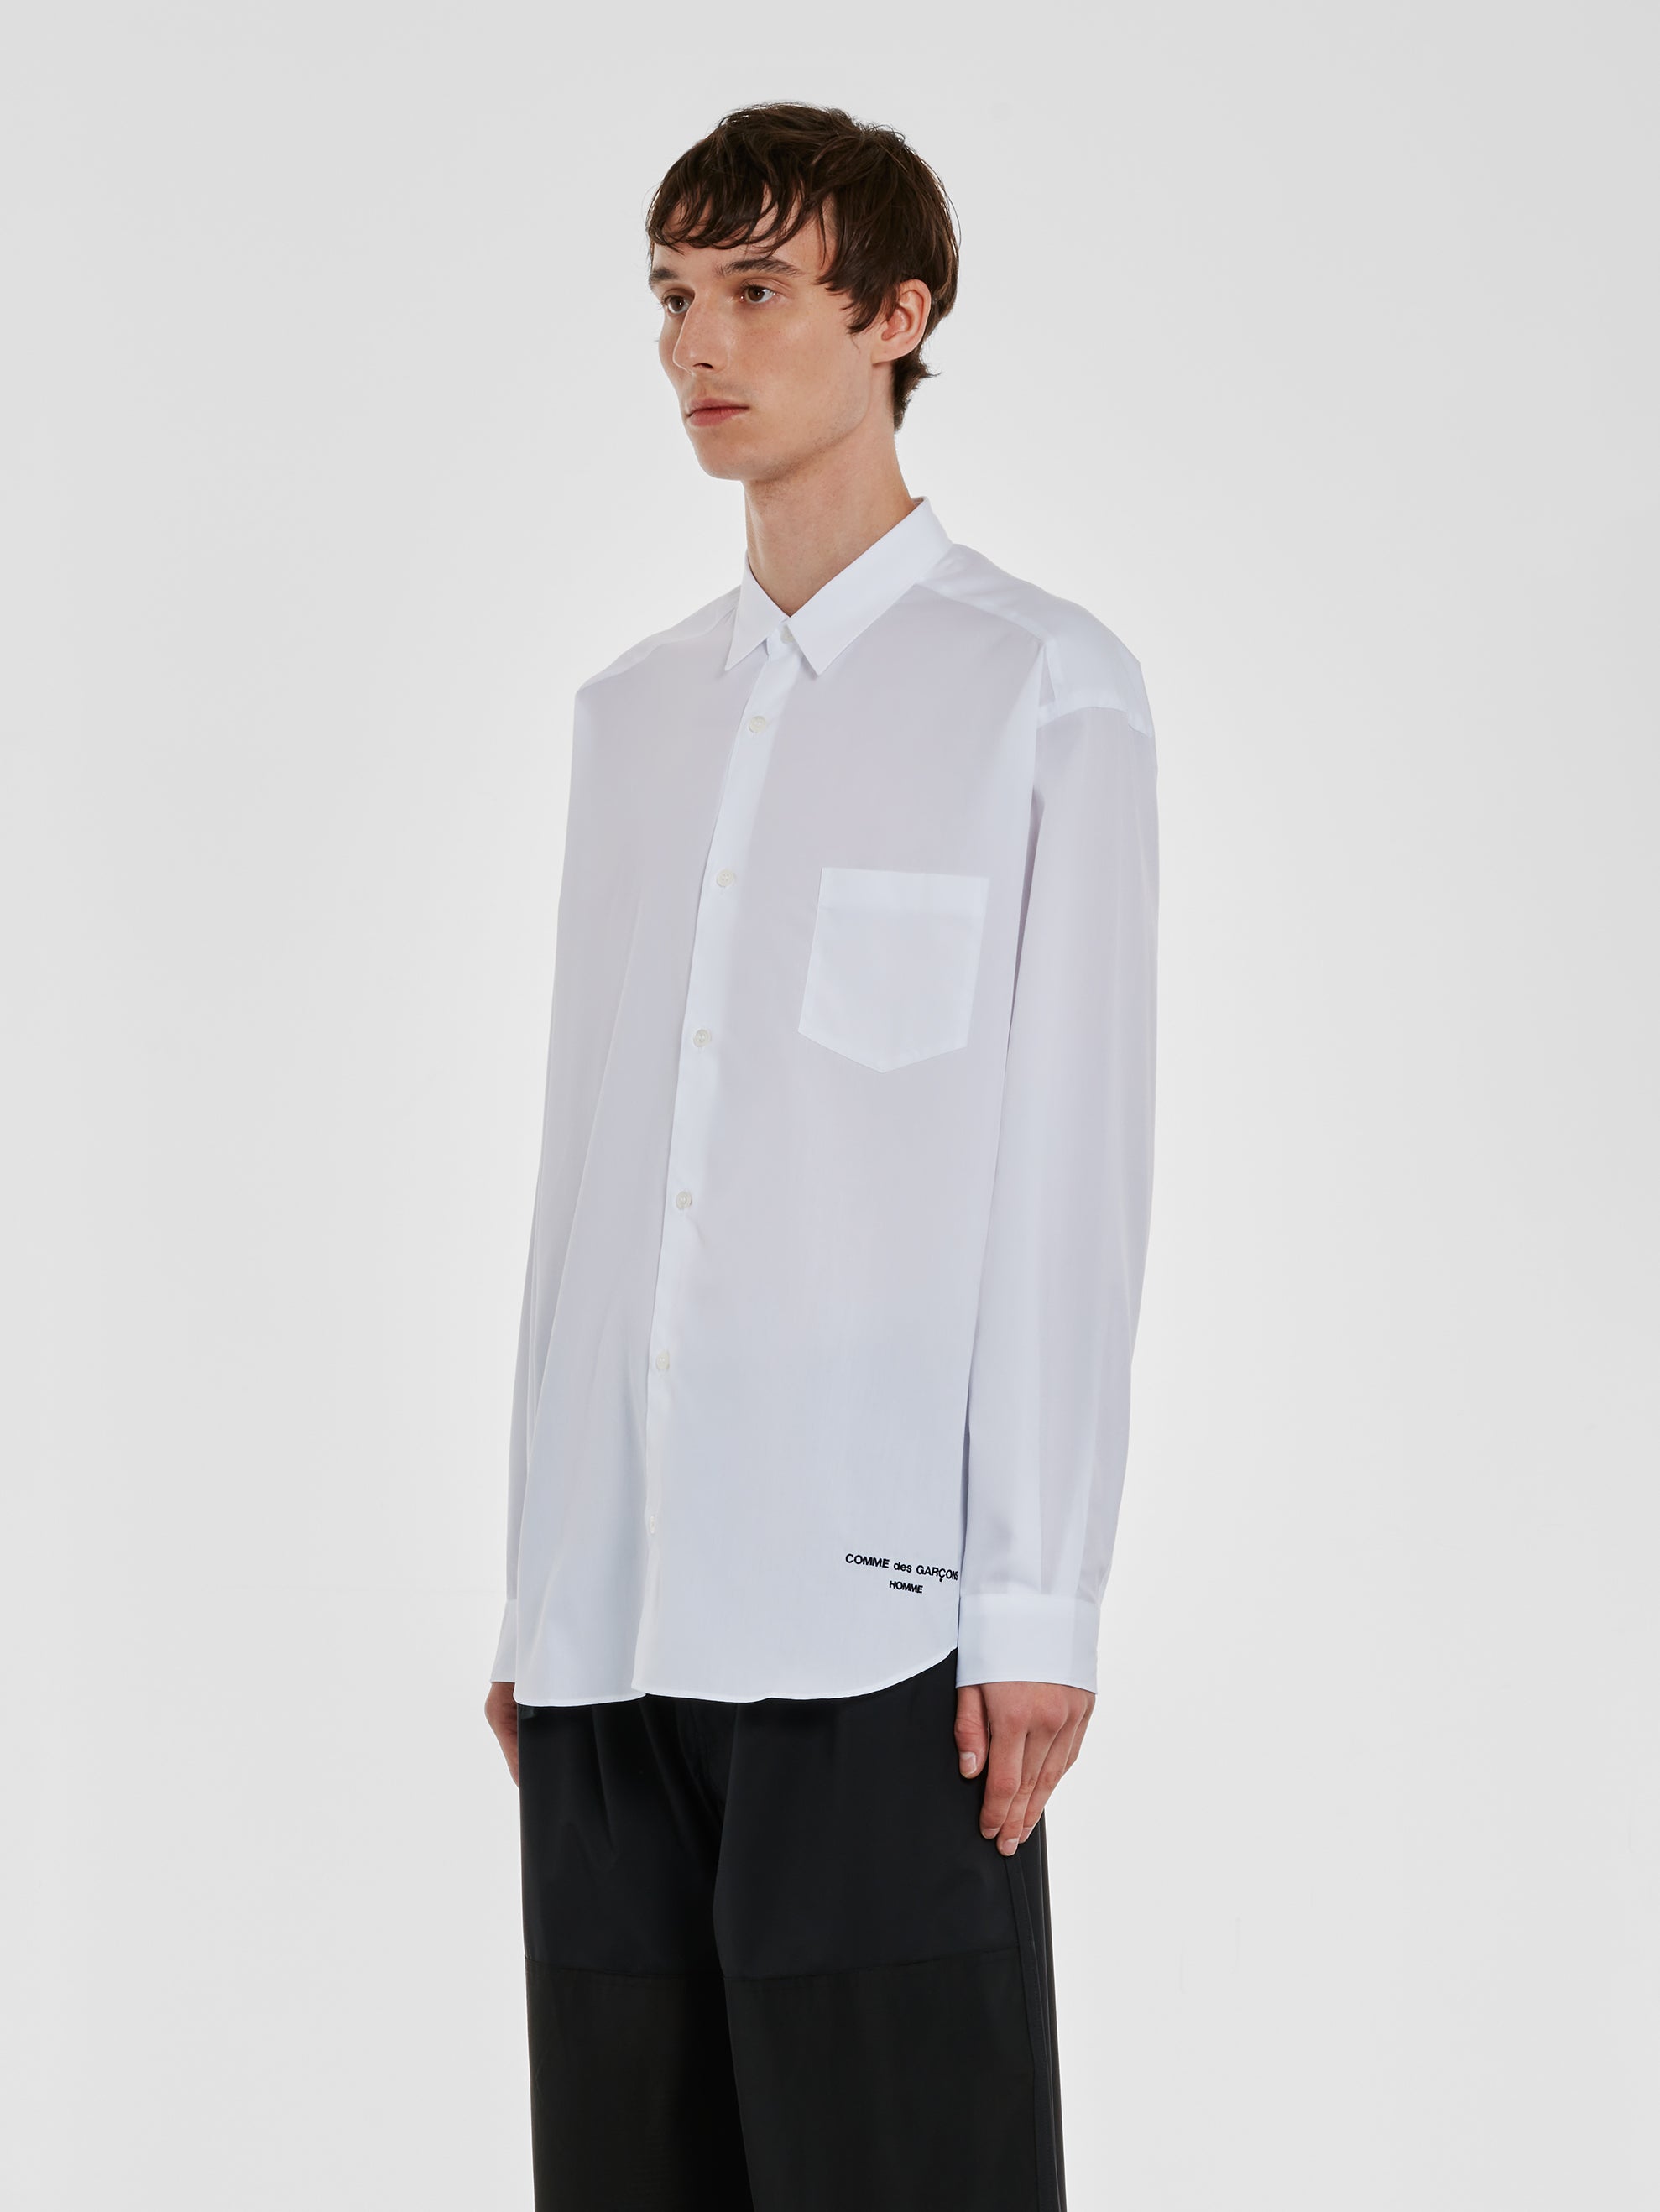 Comme des Garçons Homme - Men’s Cotton Shirt - (White) view 2